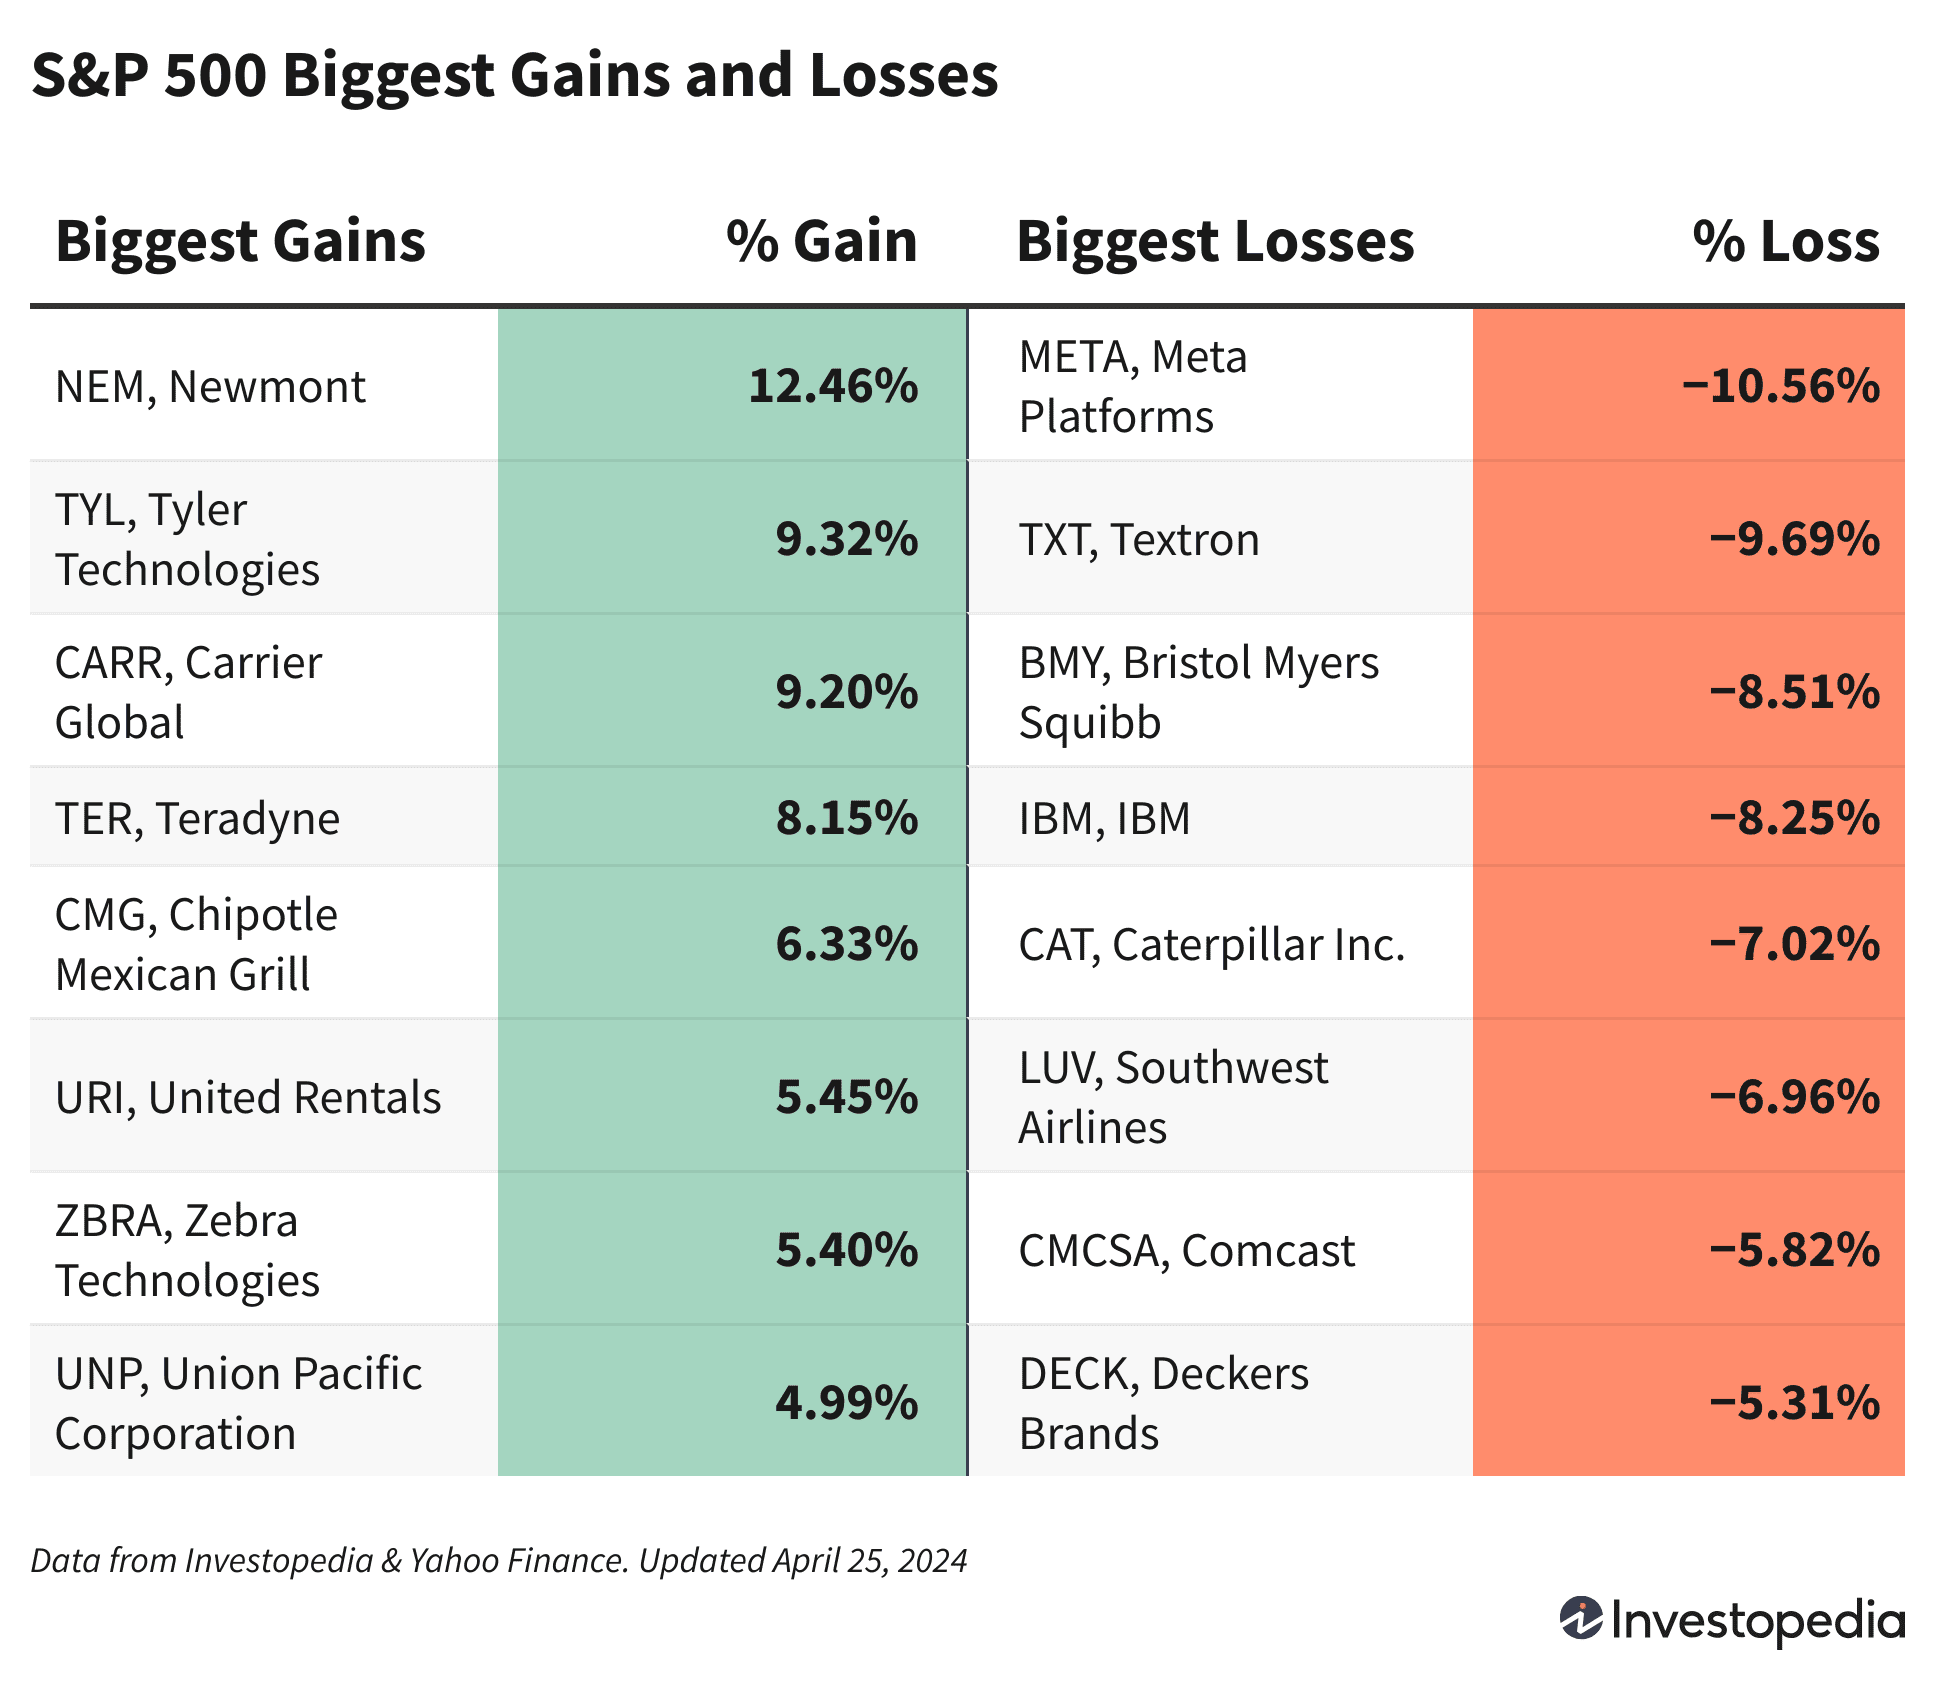 S&P 500 Biggest Gains and Losses April 25, 2024